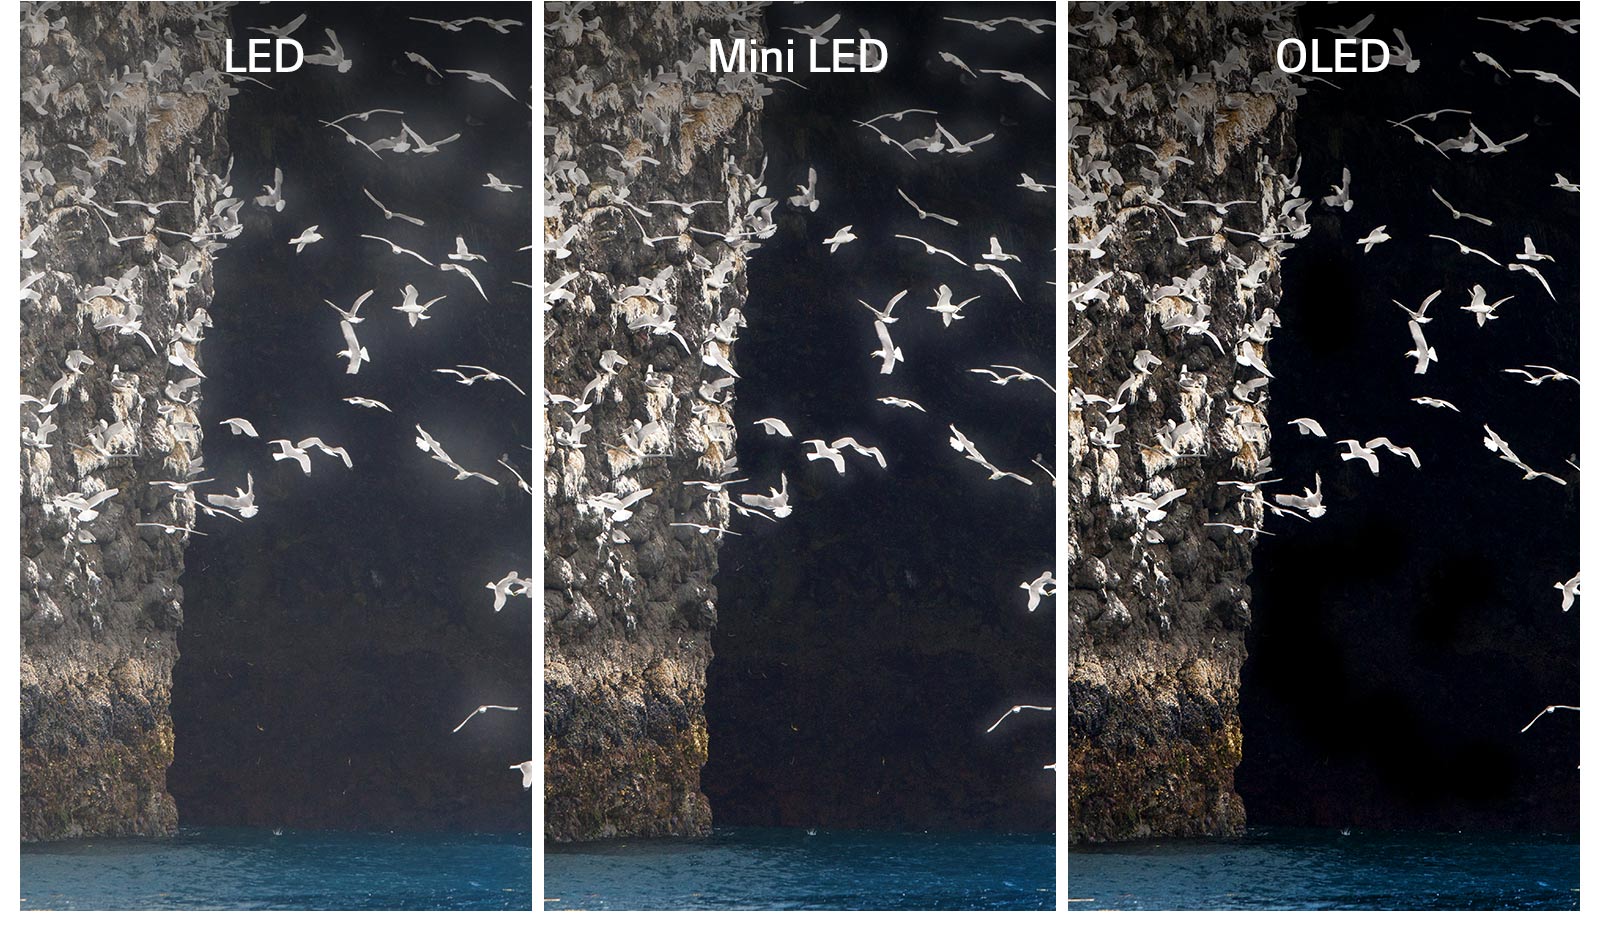 Сравнение LED, Mini LED и OLED, на которых демонстрируется одинаковое изображение птицы, взмахивающей крыльями на озере. У телевизоров LED и Mini LED виден эффект ореола вокруг крыльев, из-за чего они выглядят нечеткими. У OLED с идеальным черным крылья выглядят четкими.